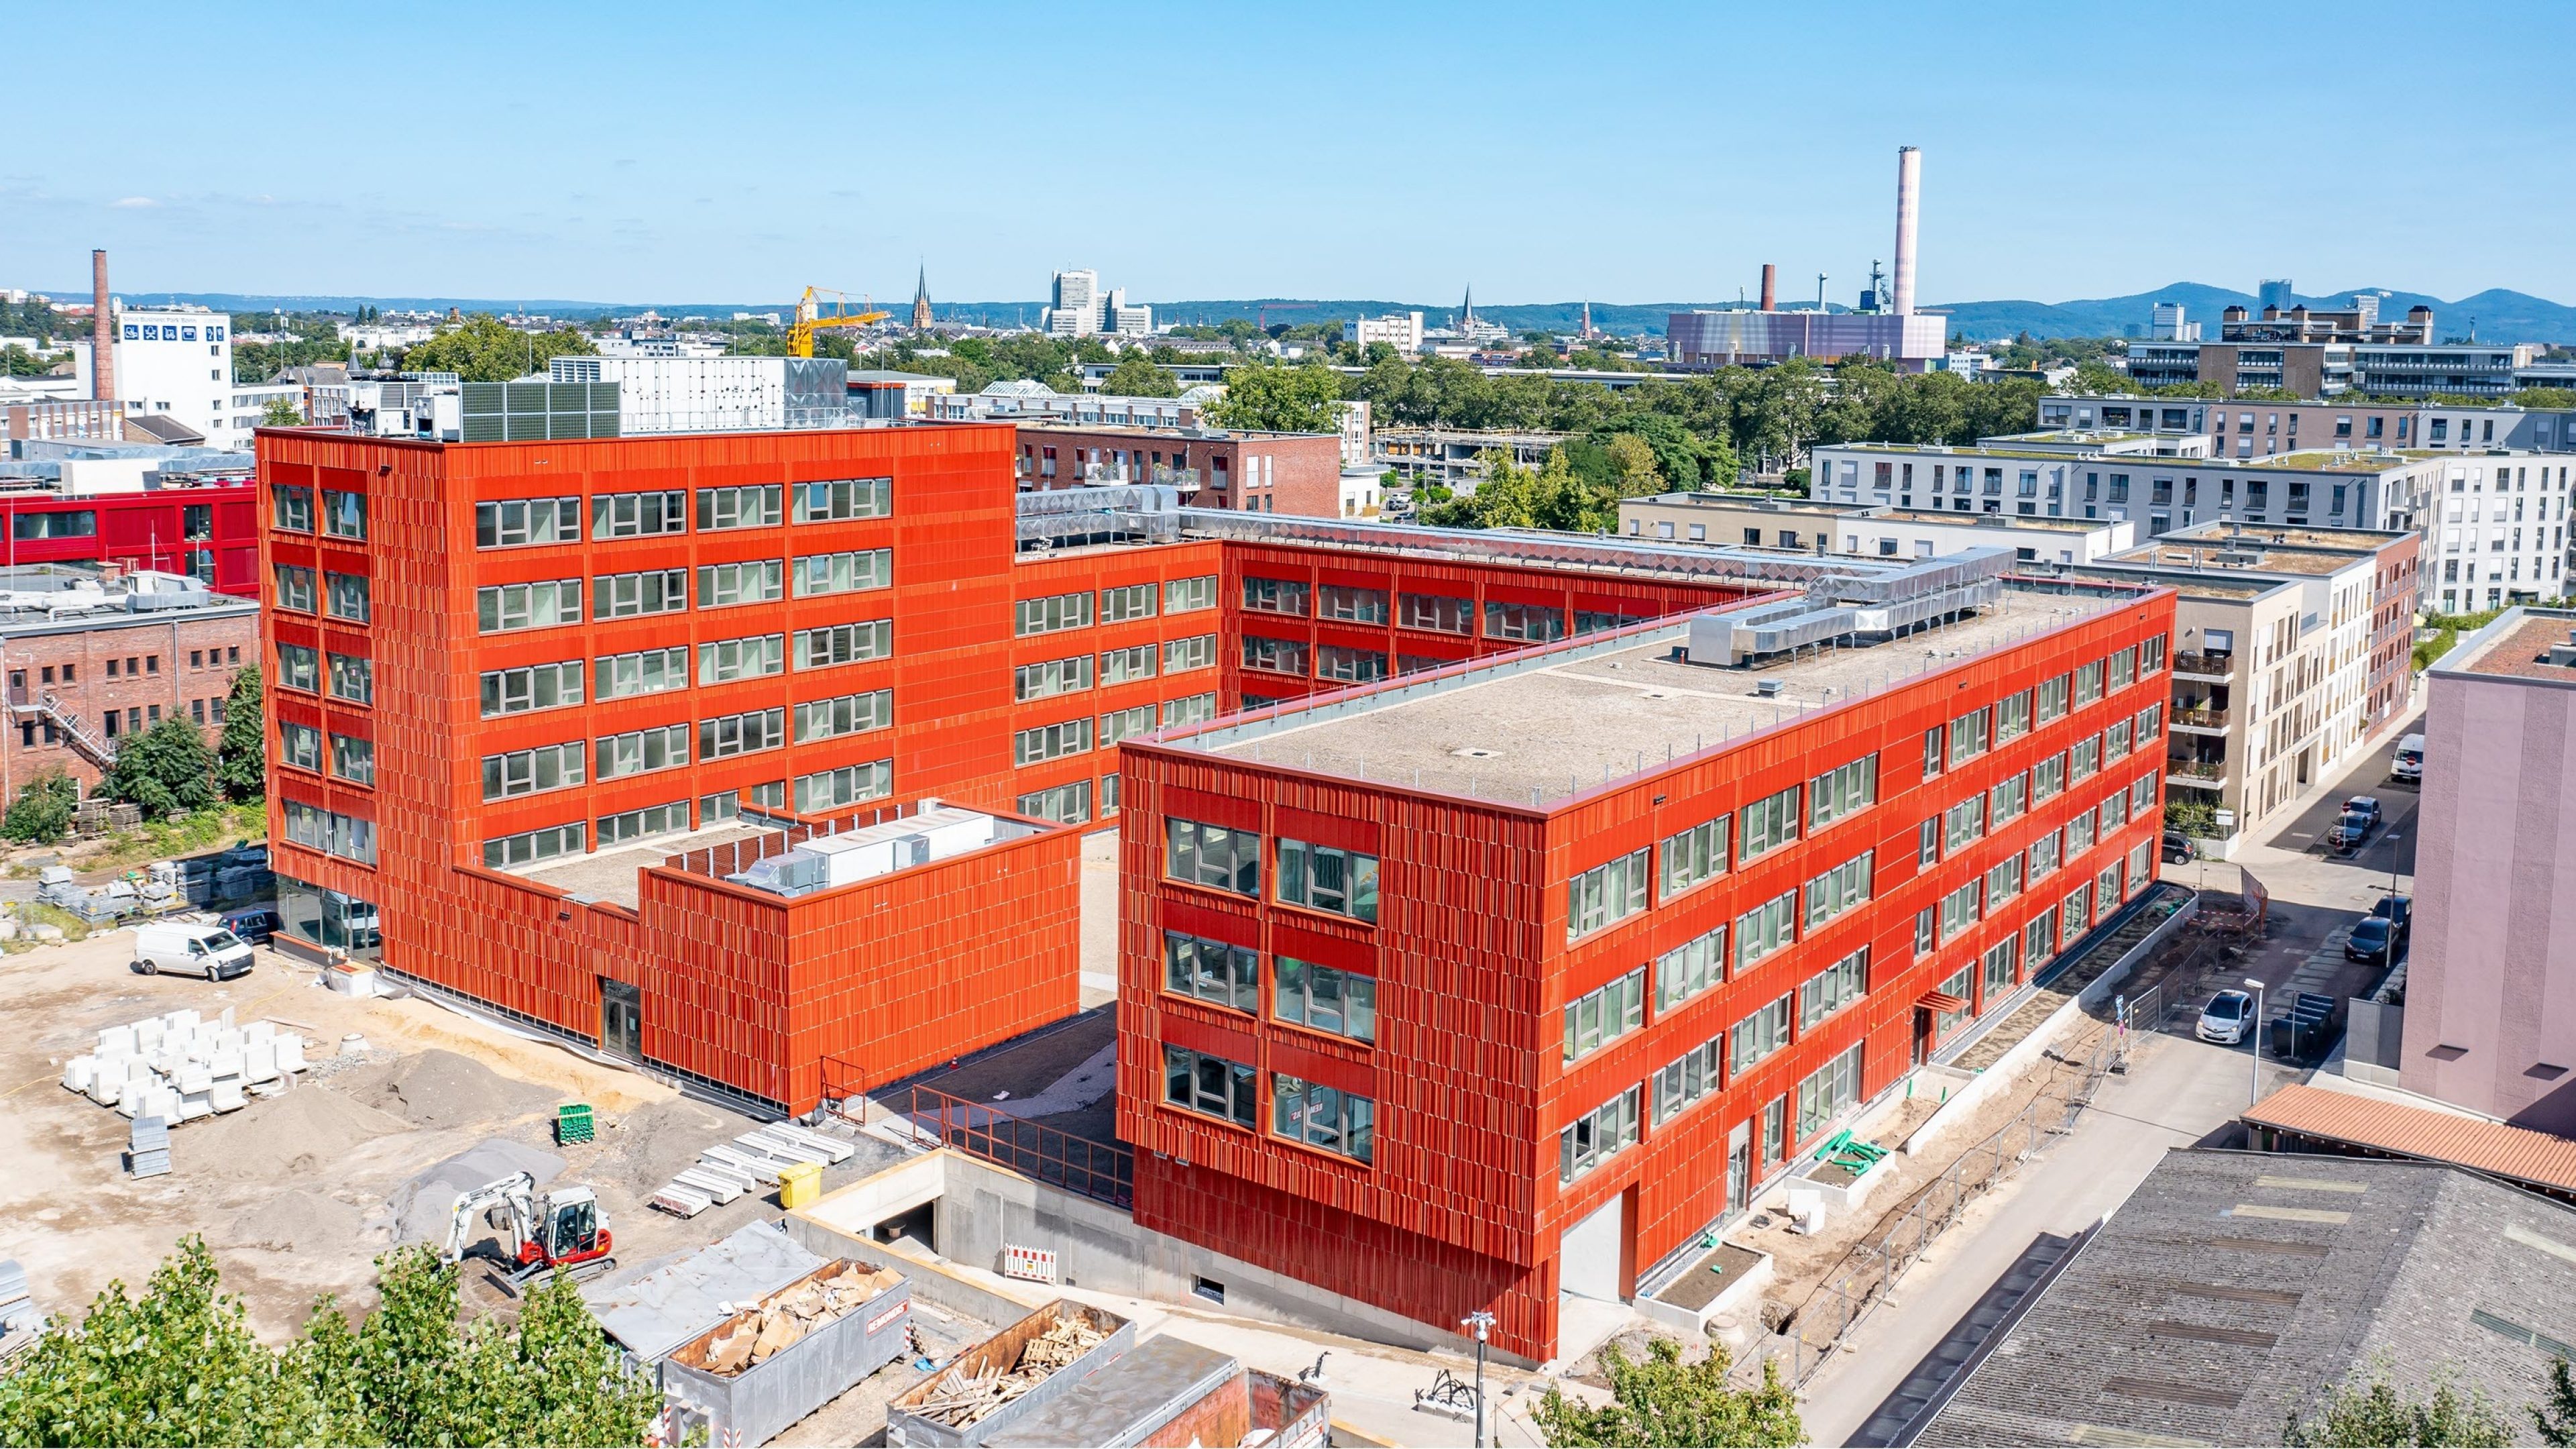 Le bâtiment « MI 2 » situé dans le nouveau quartier « West.side Office » à Bonn a tout l’air d’un projet de construction classique à l’architecture contemporaine. 